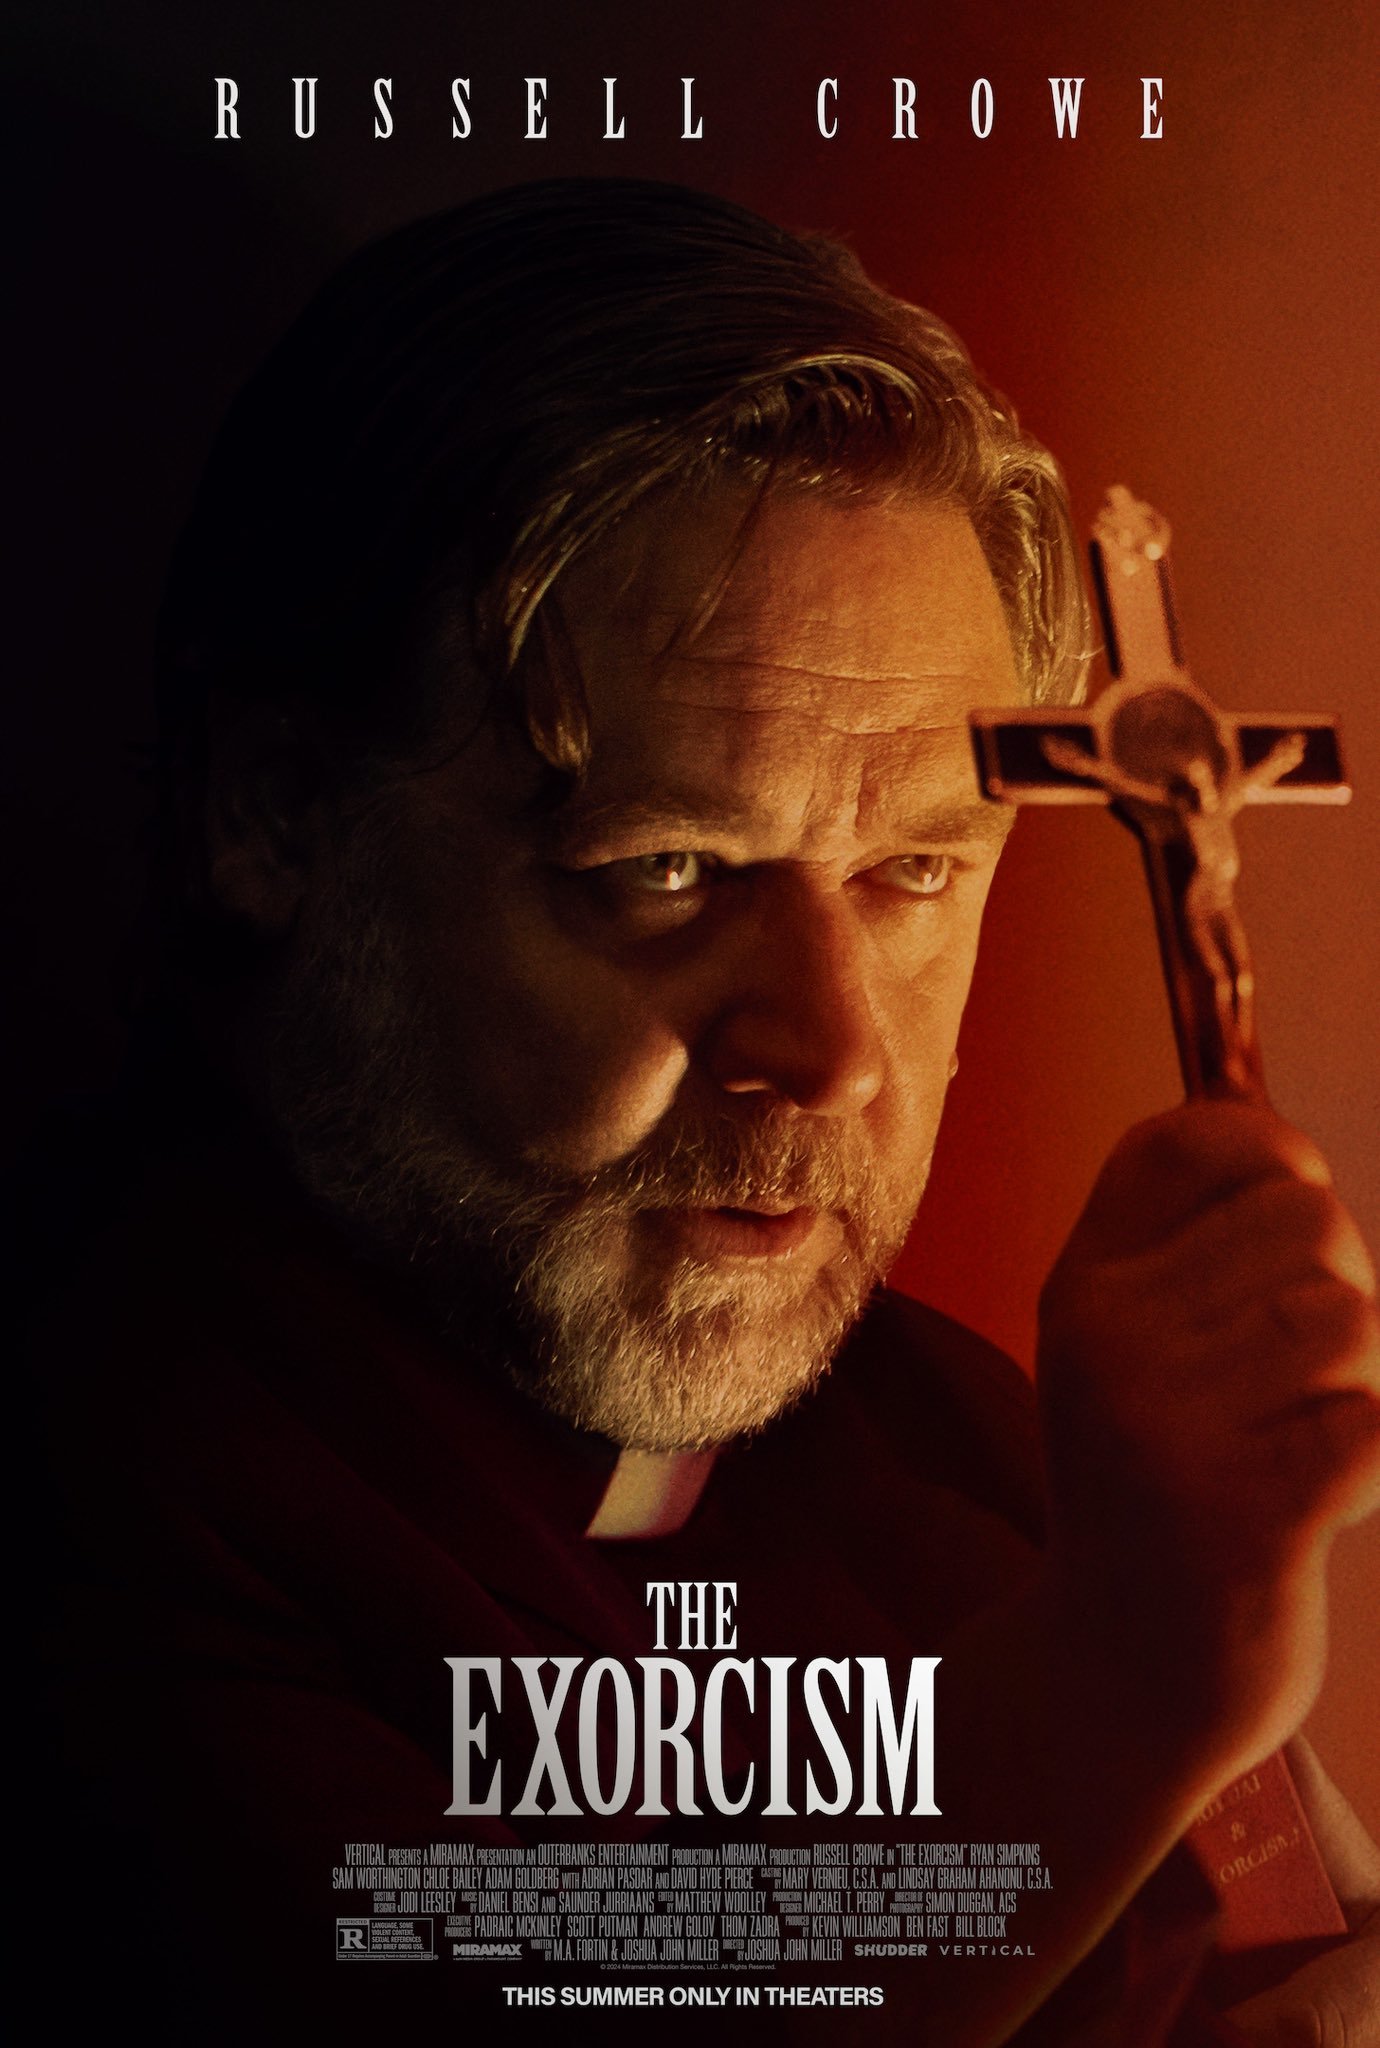 Los exorcismos parecen ser el nuevo género de cine favorito para Russell Crowe, que estrena nueva cinta de terror en verano